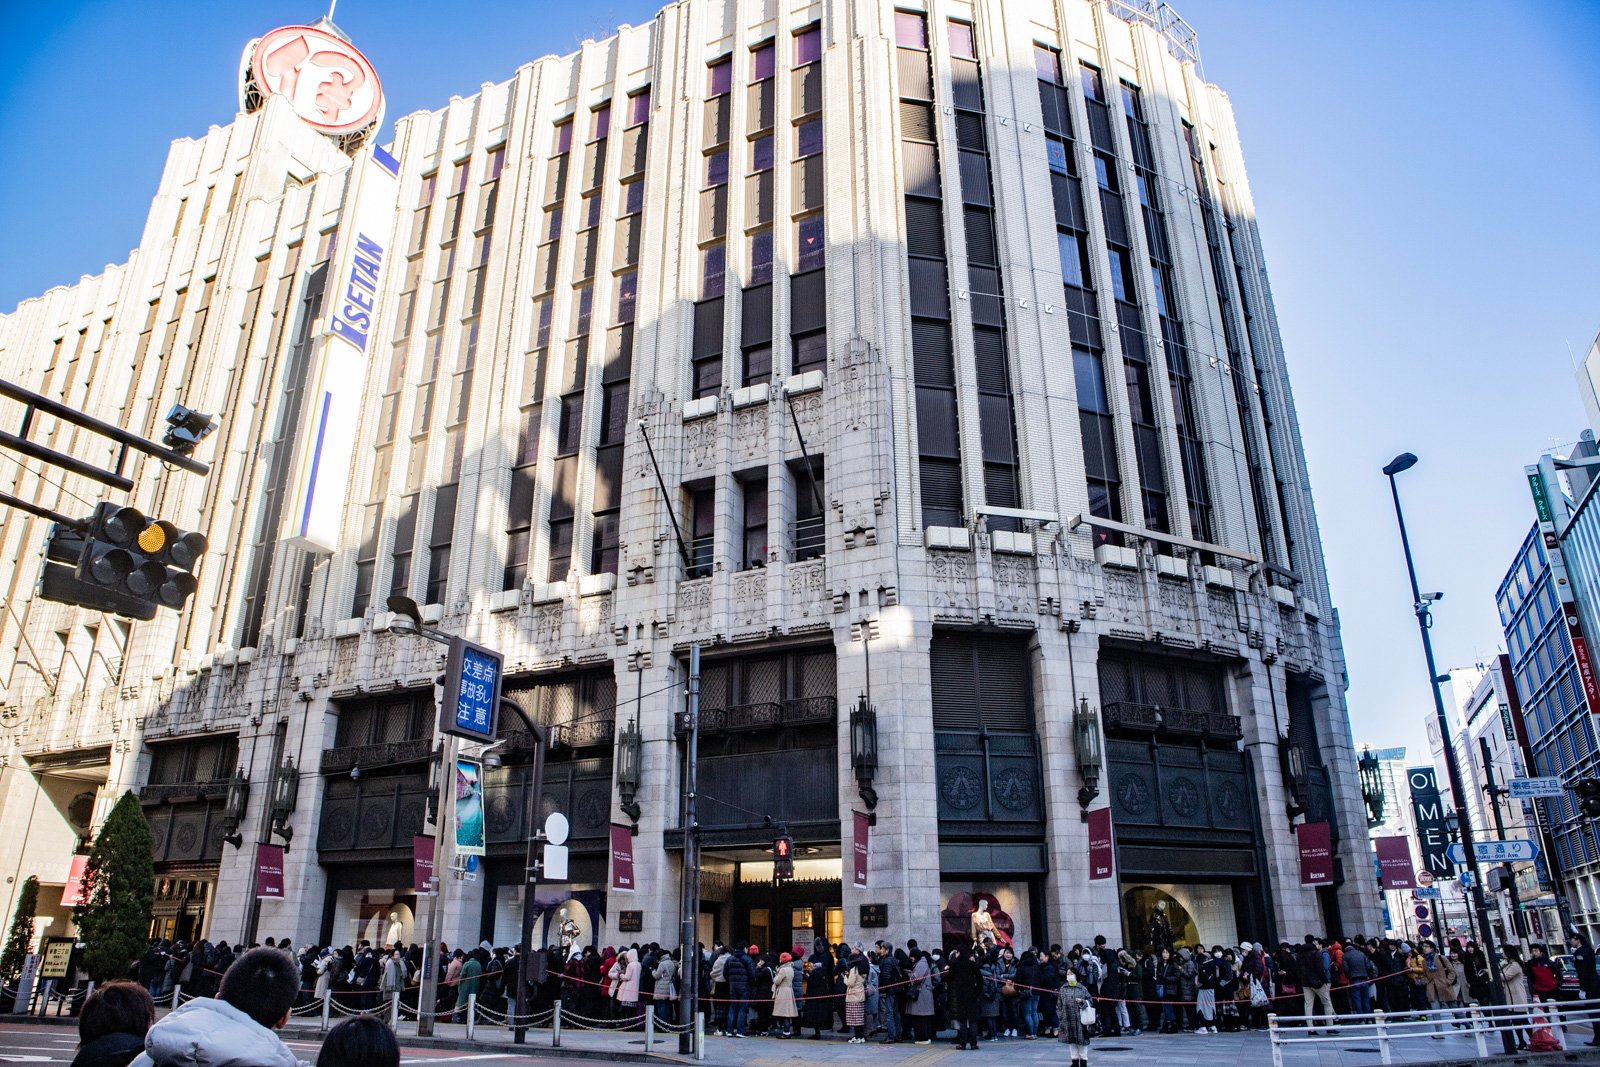 伊勢丹新宿店が7年ぶりに初売りとセールを同時開催 1万人以上の大行列に